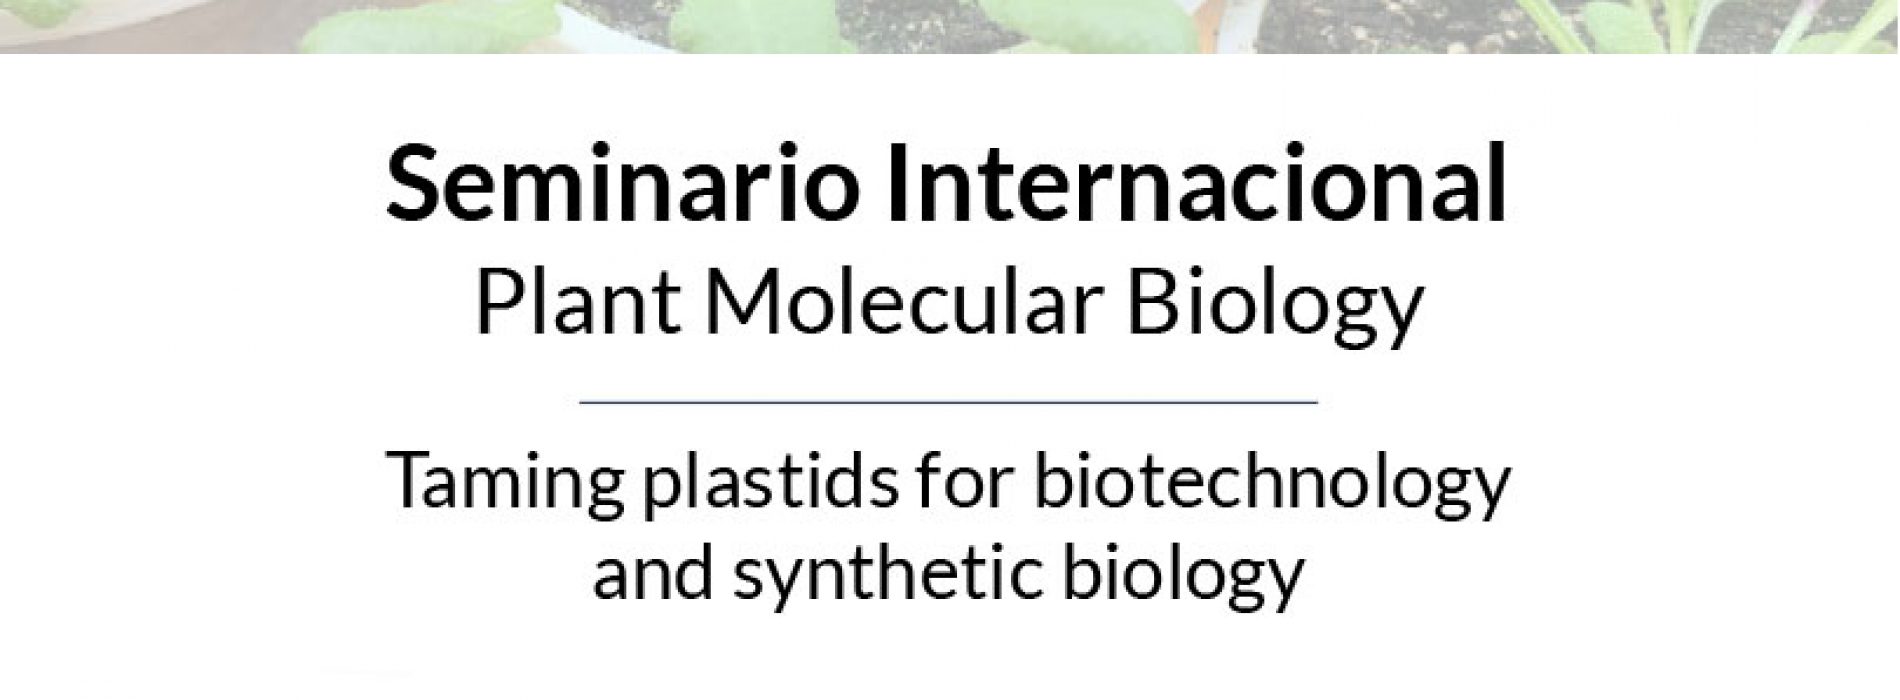 Seminario Internacional Plant Molecular Biology